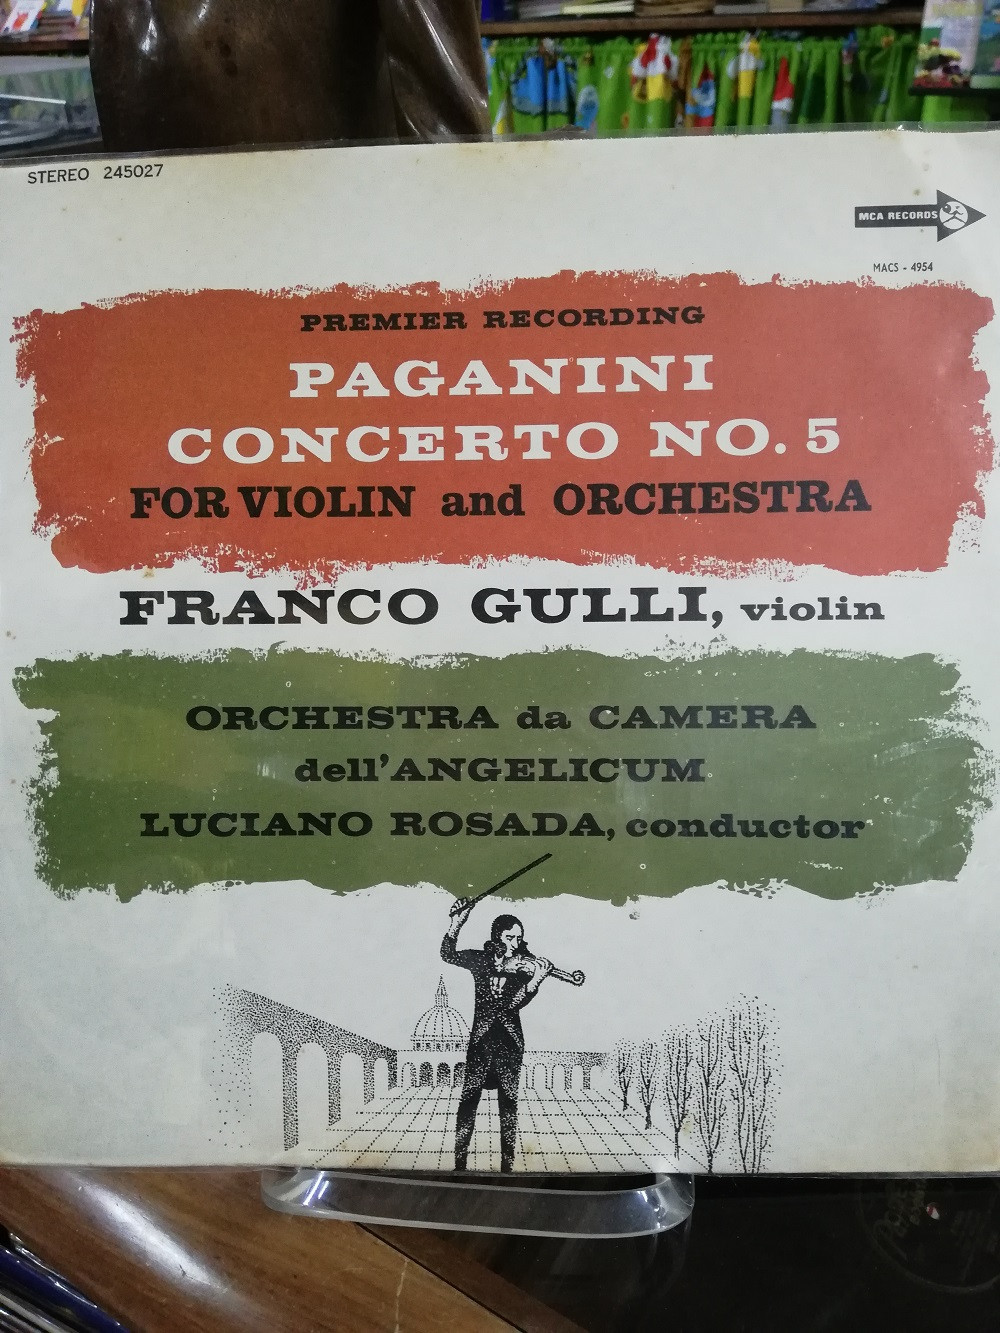 Imagen LP PAGANINI CONCERTO No. 5 - FRANCO GULLI, VIOLIN - LUCIANO ROSADA, CONDUCTOR 1